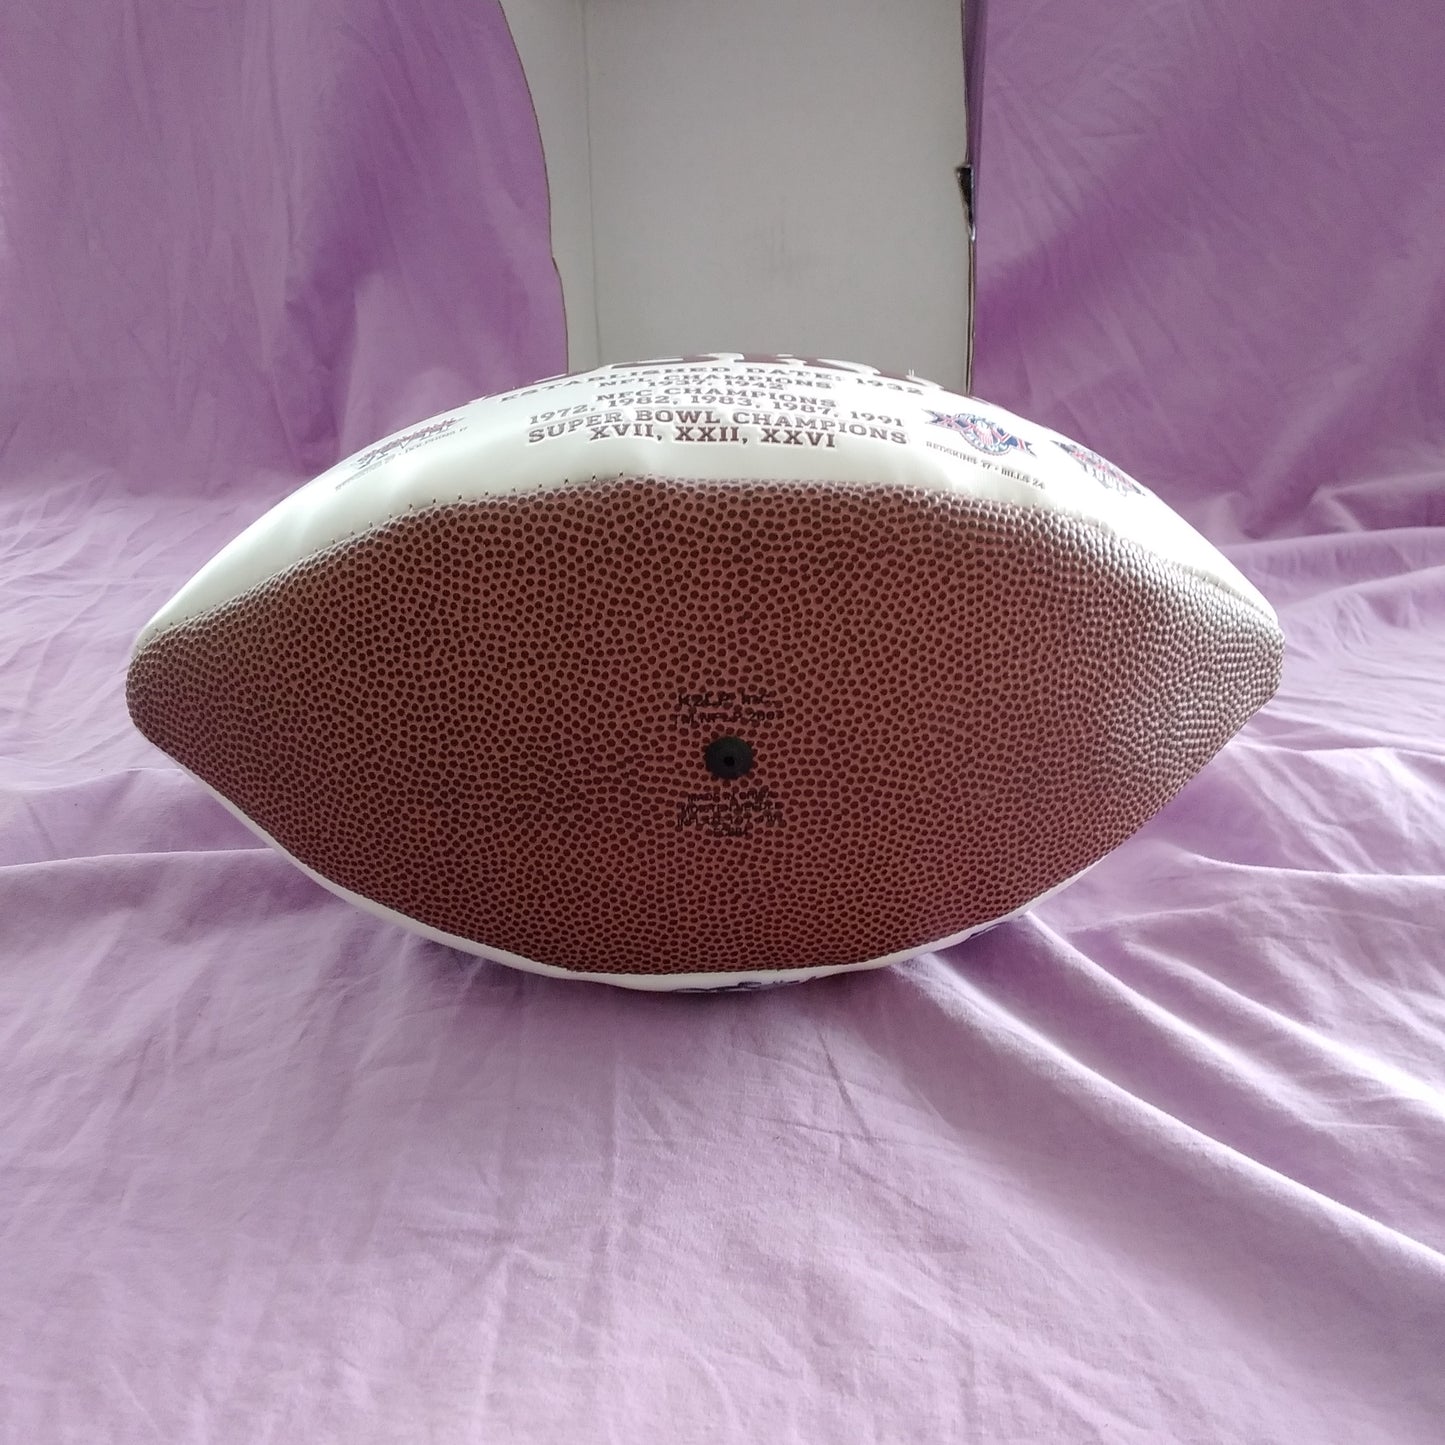 2011 Washington Redskins Full Size Autographed Logo Football